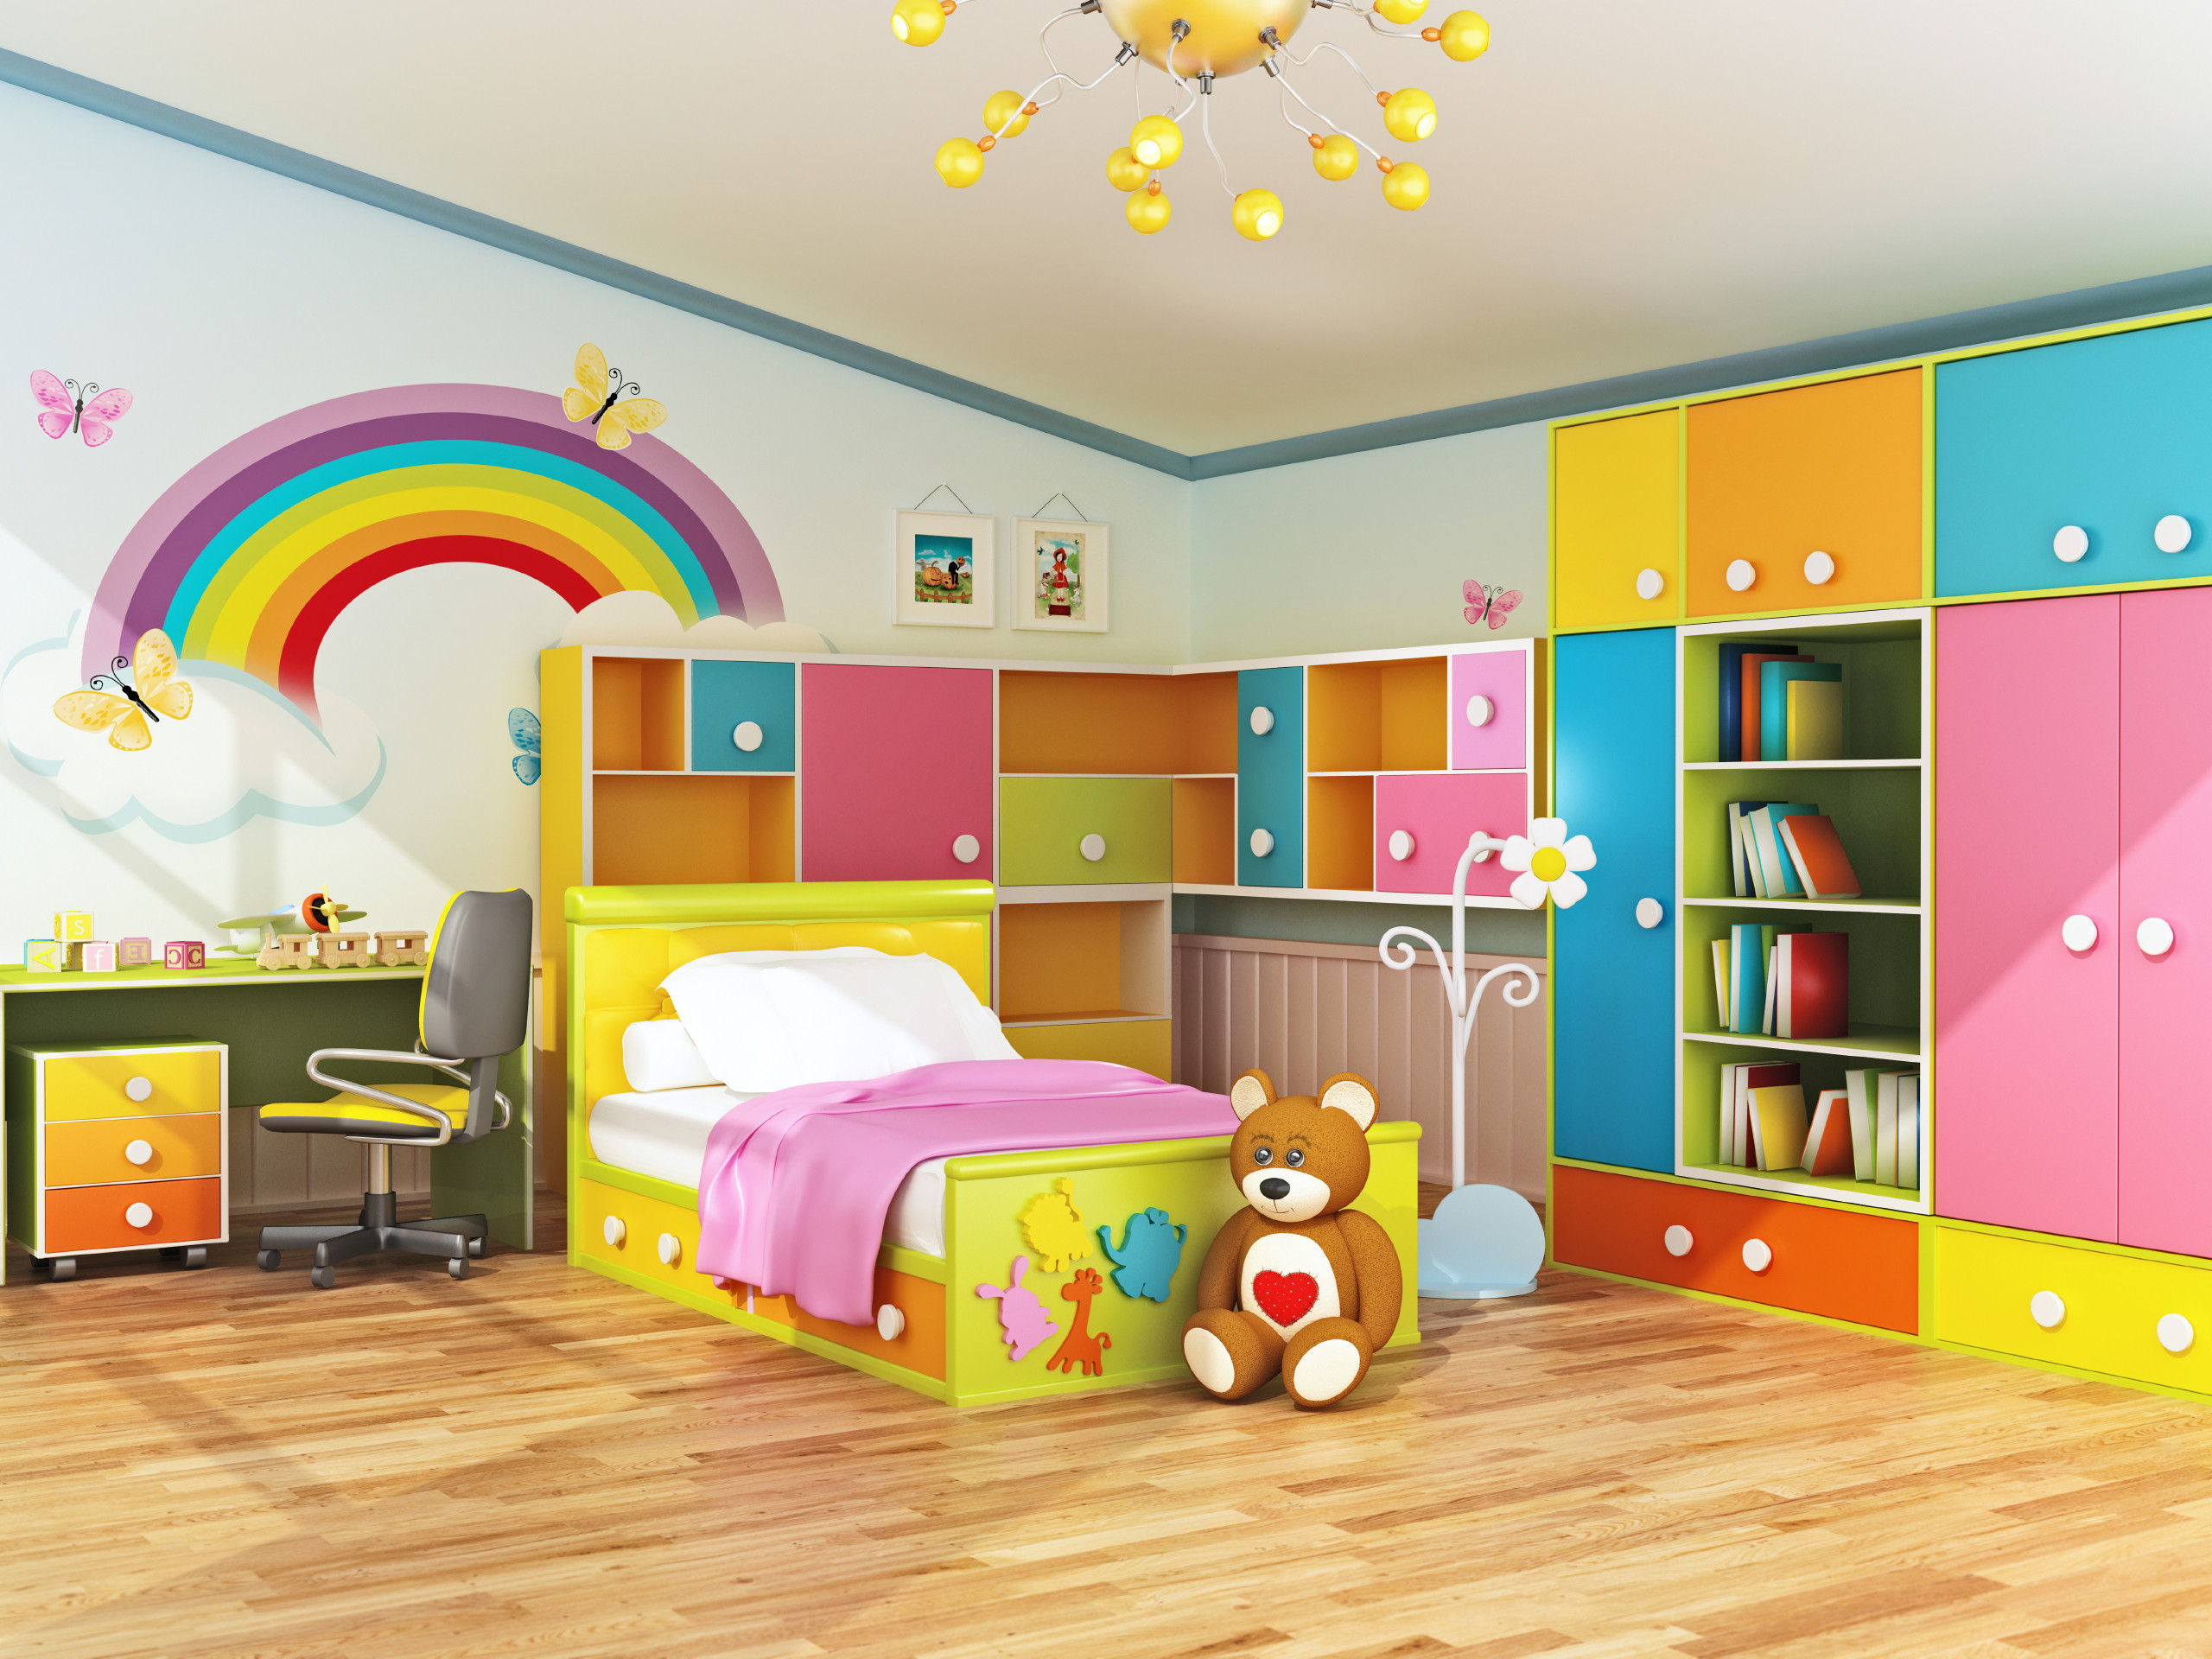 Children Bedroom Decorations
 Plan Ahead When Decorating Kids Bedrooms